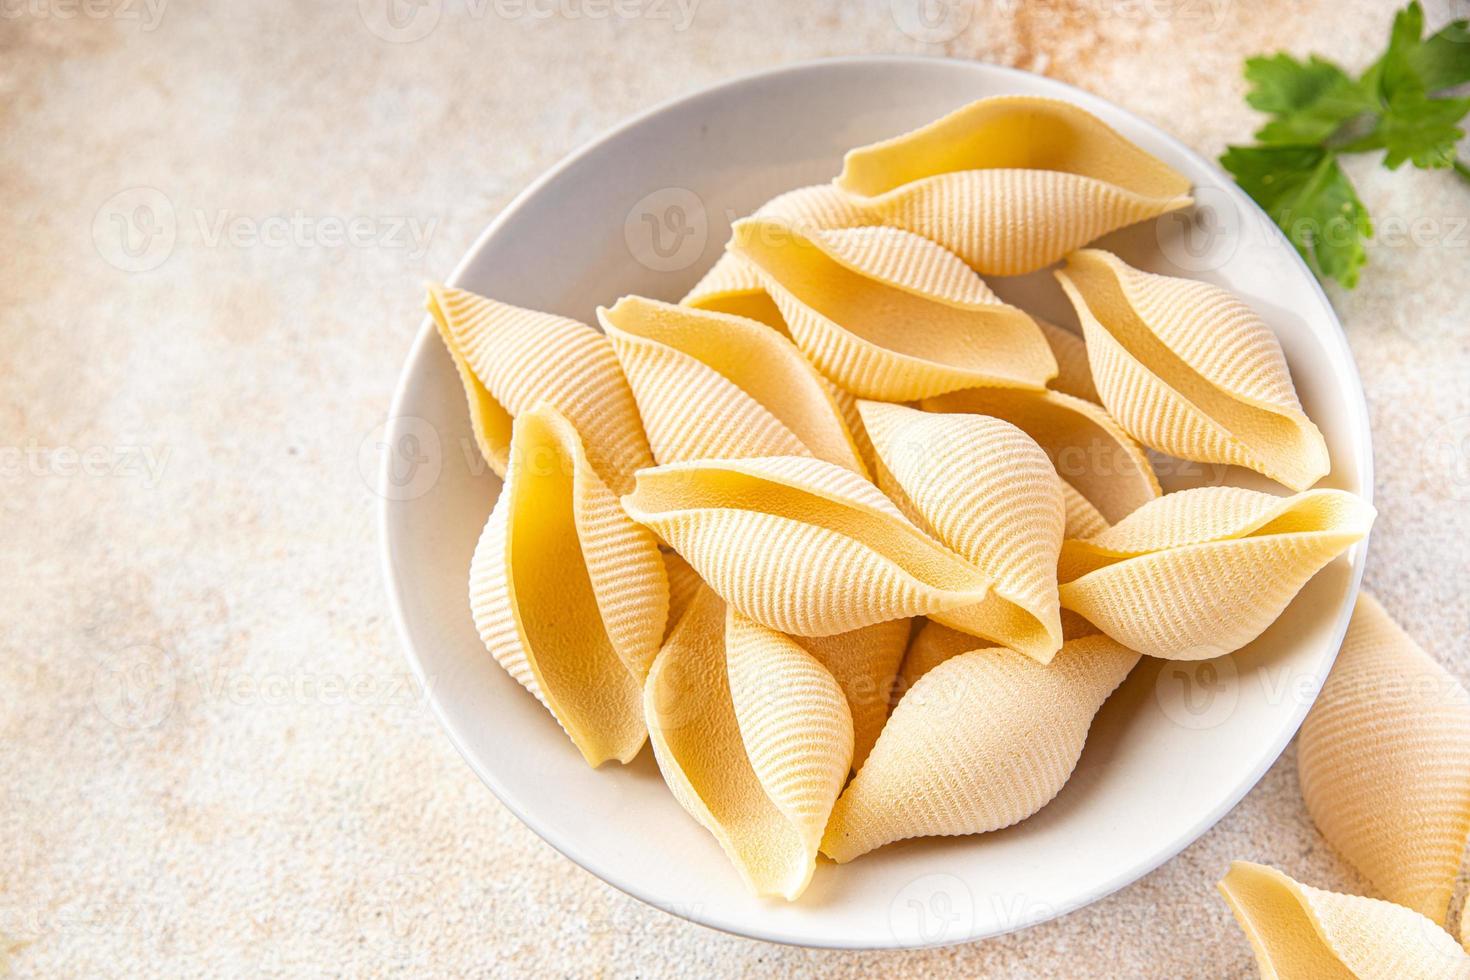 conchiglie pasta rå big shell durumvete semolamjöl foto